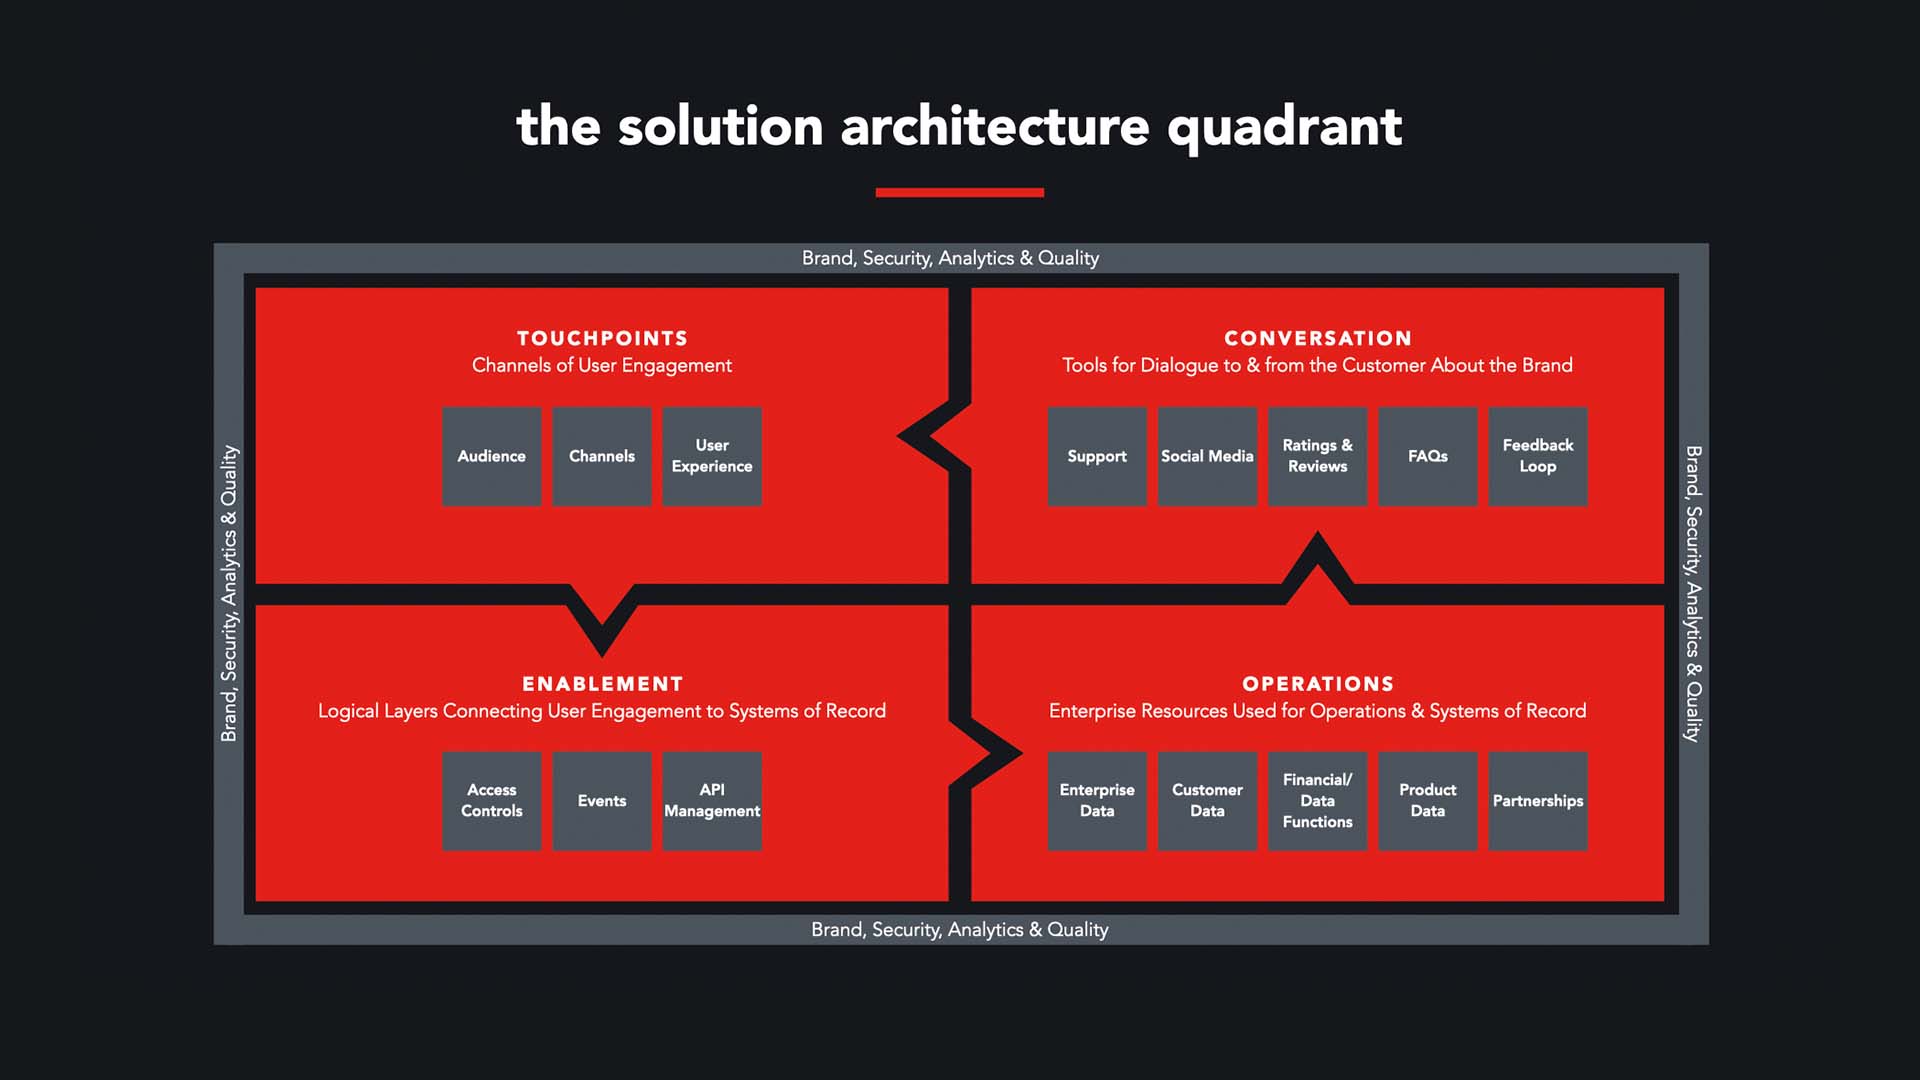 The Solution Architecture Quadrant